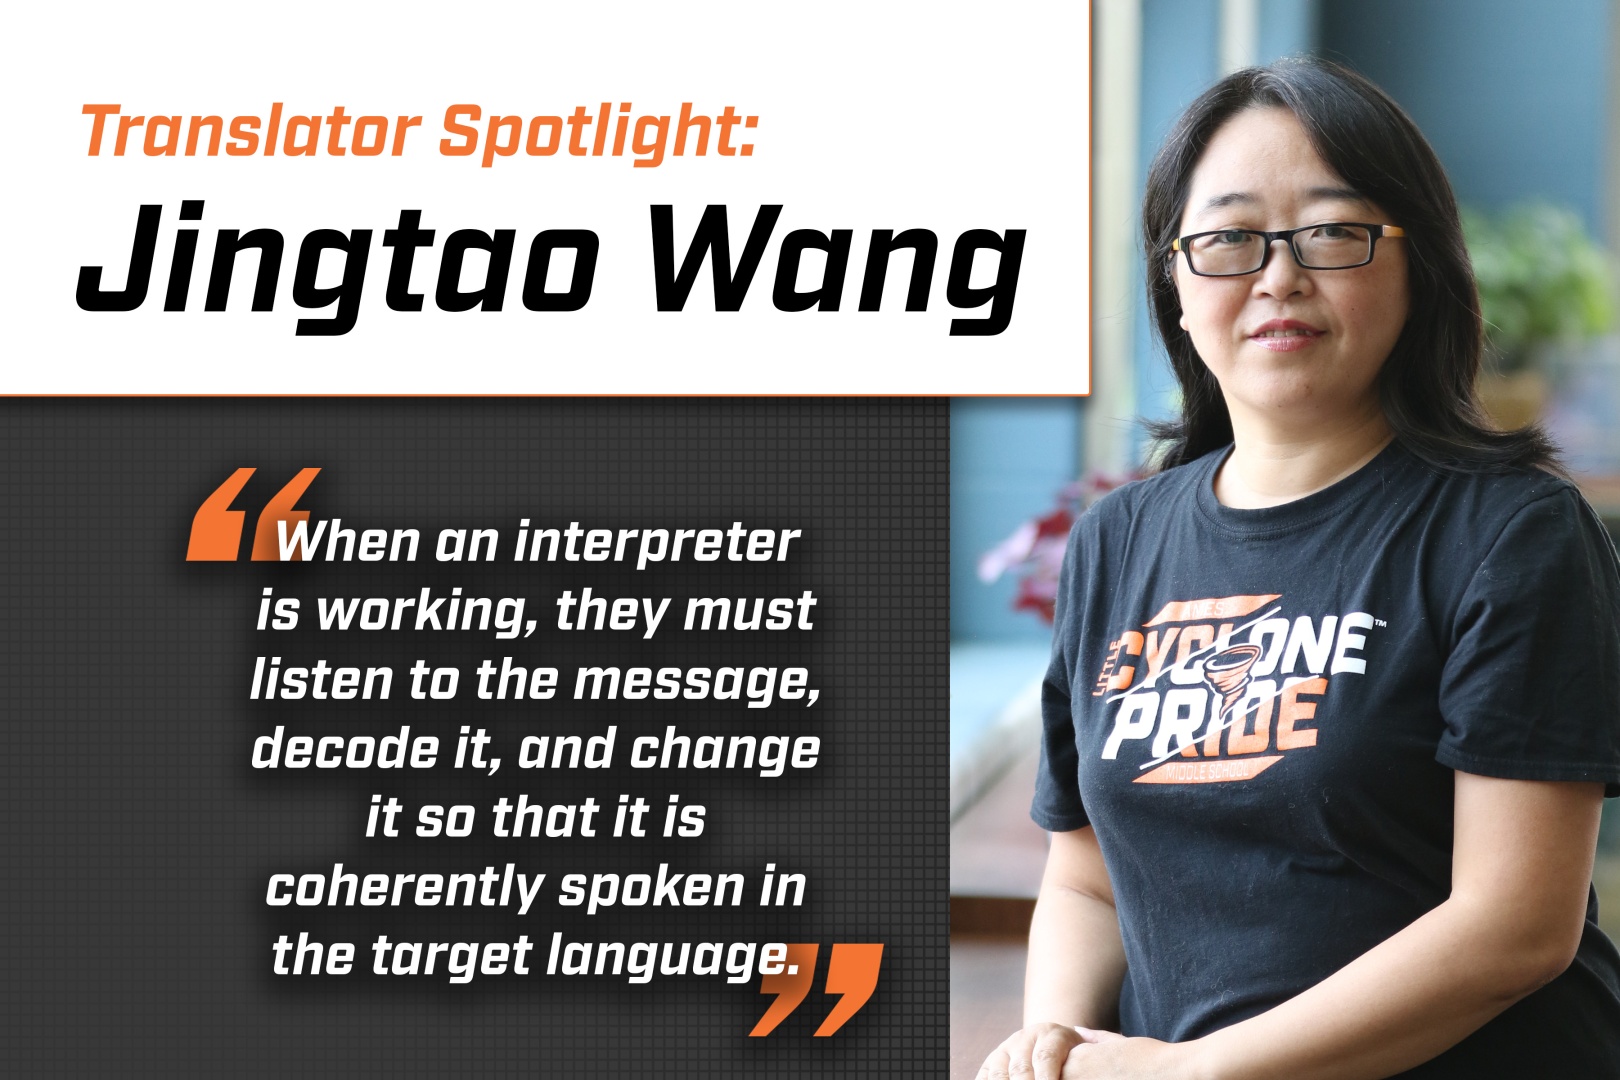 Jingtoa Wang Translation Spotlight